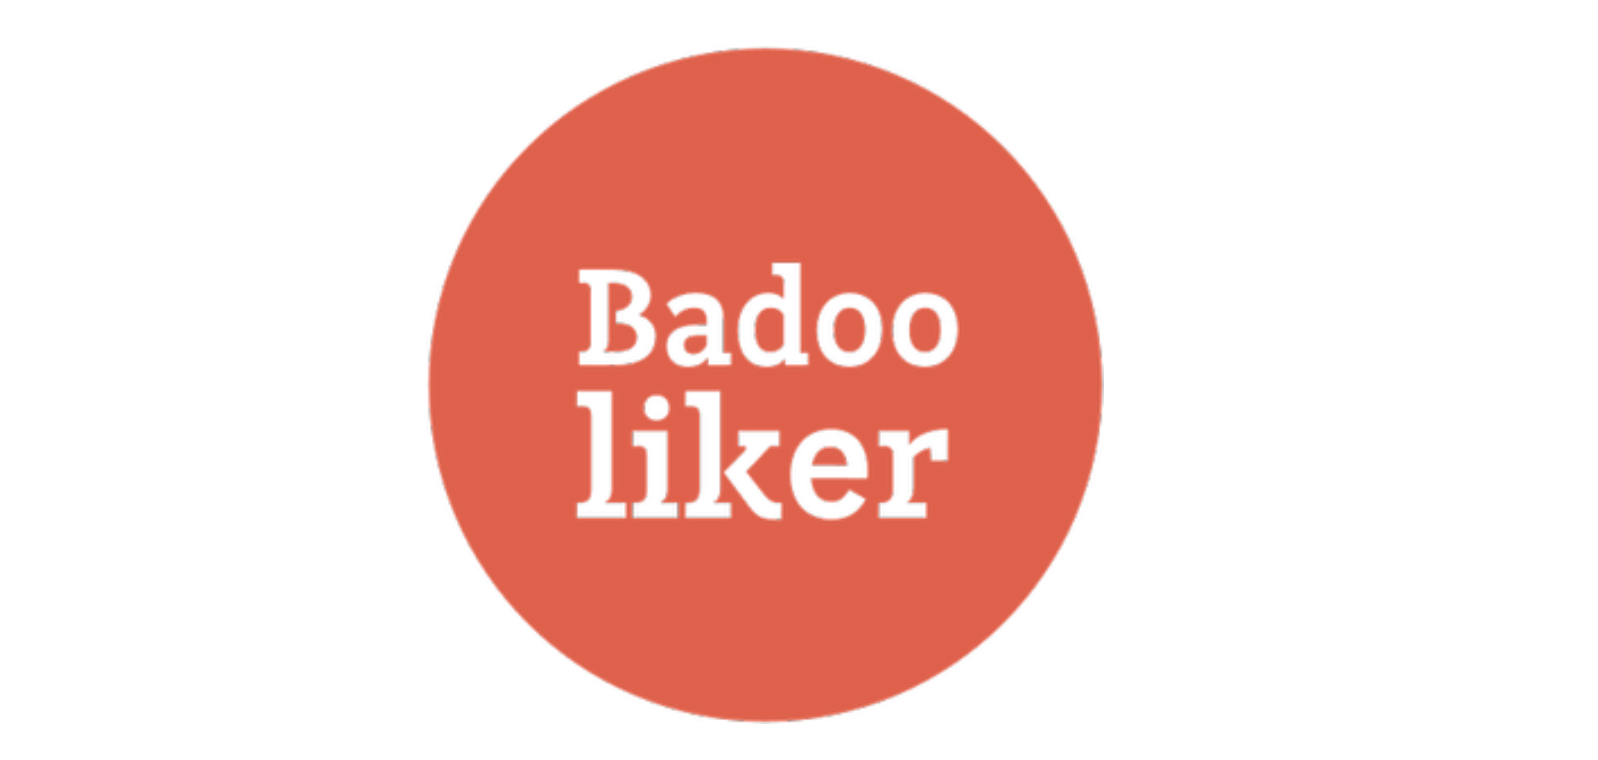 Liker badoo auto Facebook